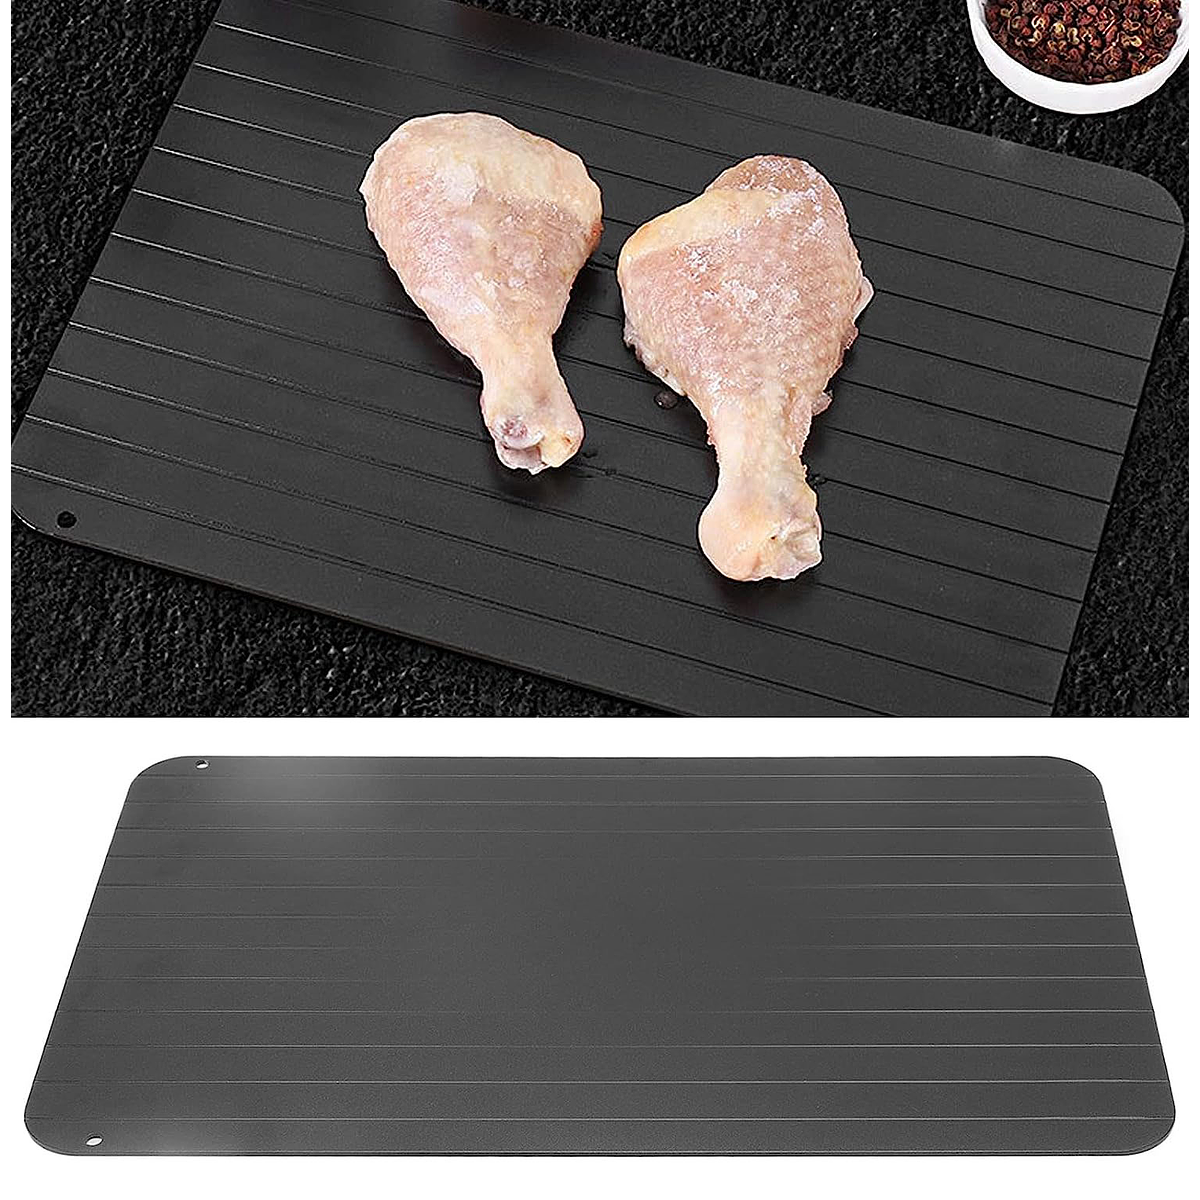 Placa de descongelación rápida para cocina, bandeja de descongelación de  aluminio, tabla de cortar para carne congelada, mariscos - AliExpress